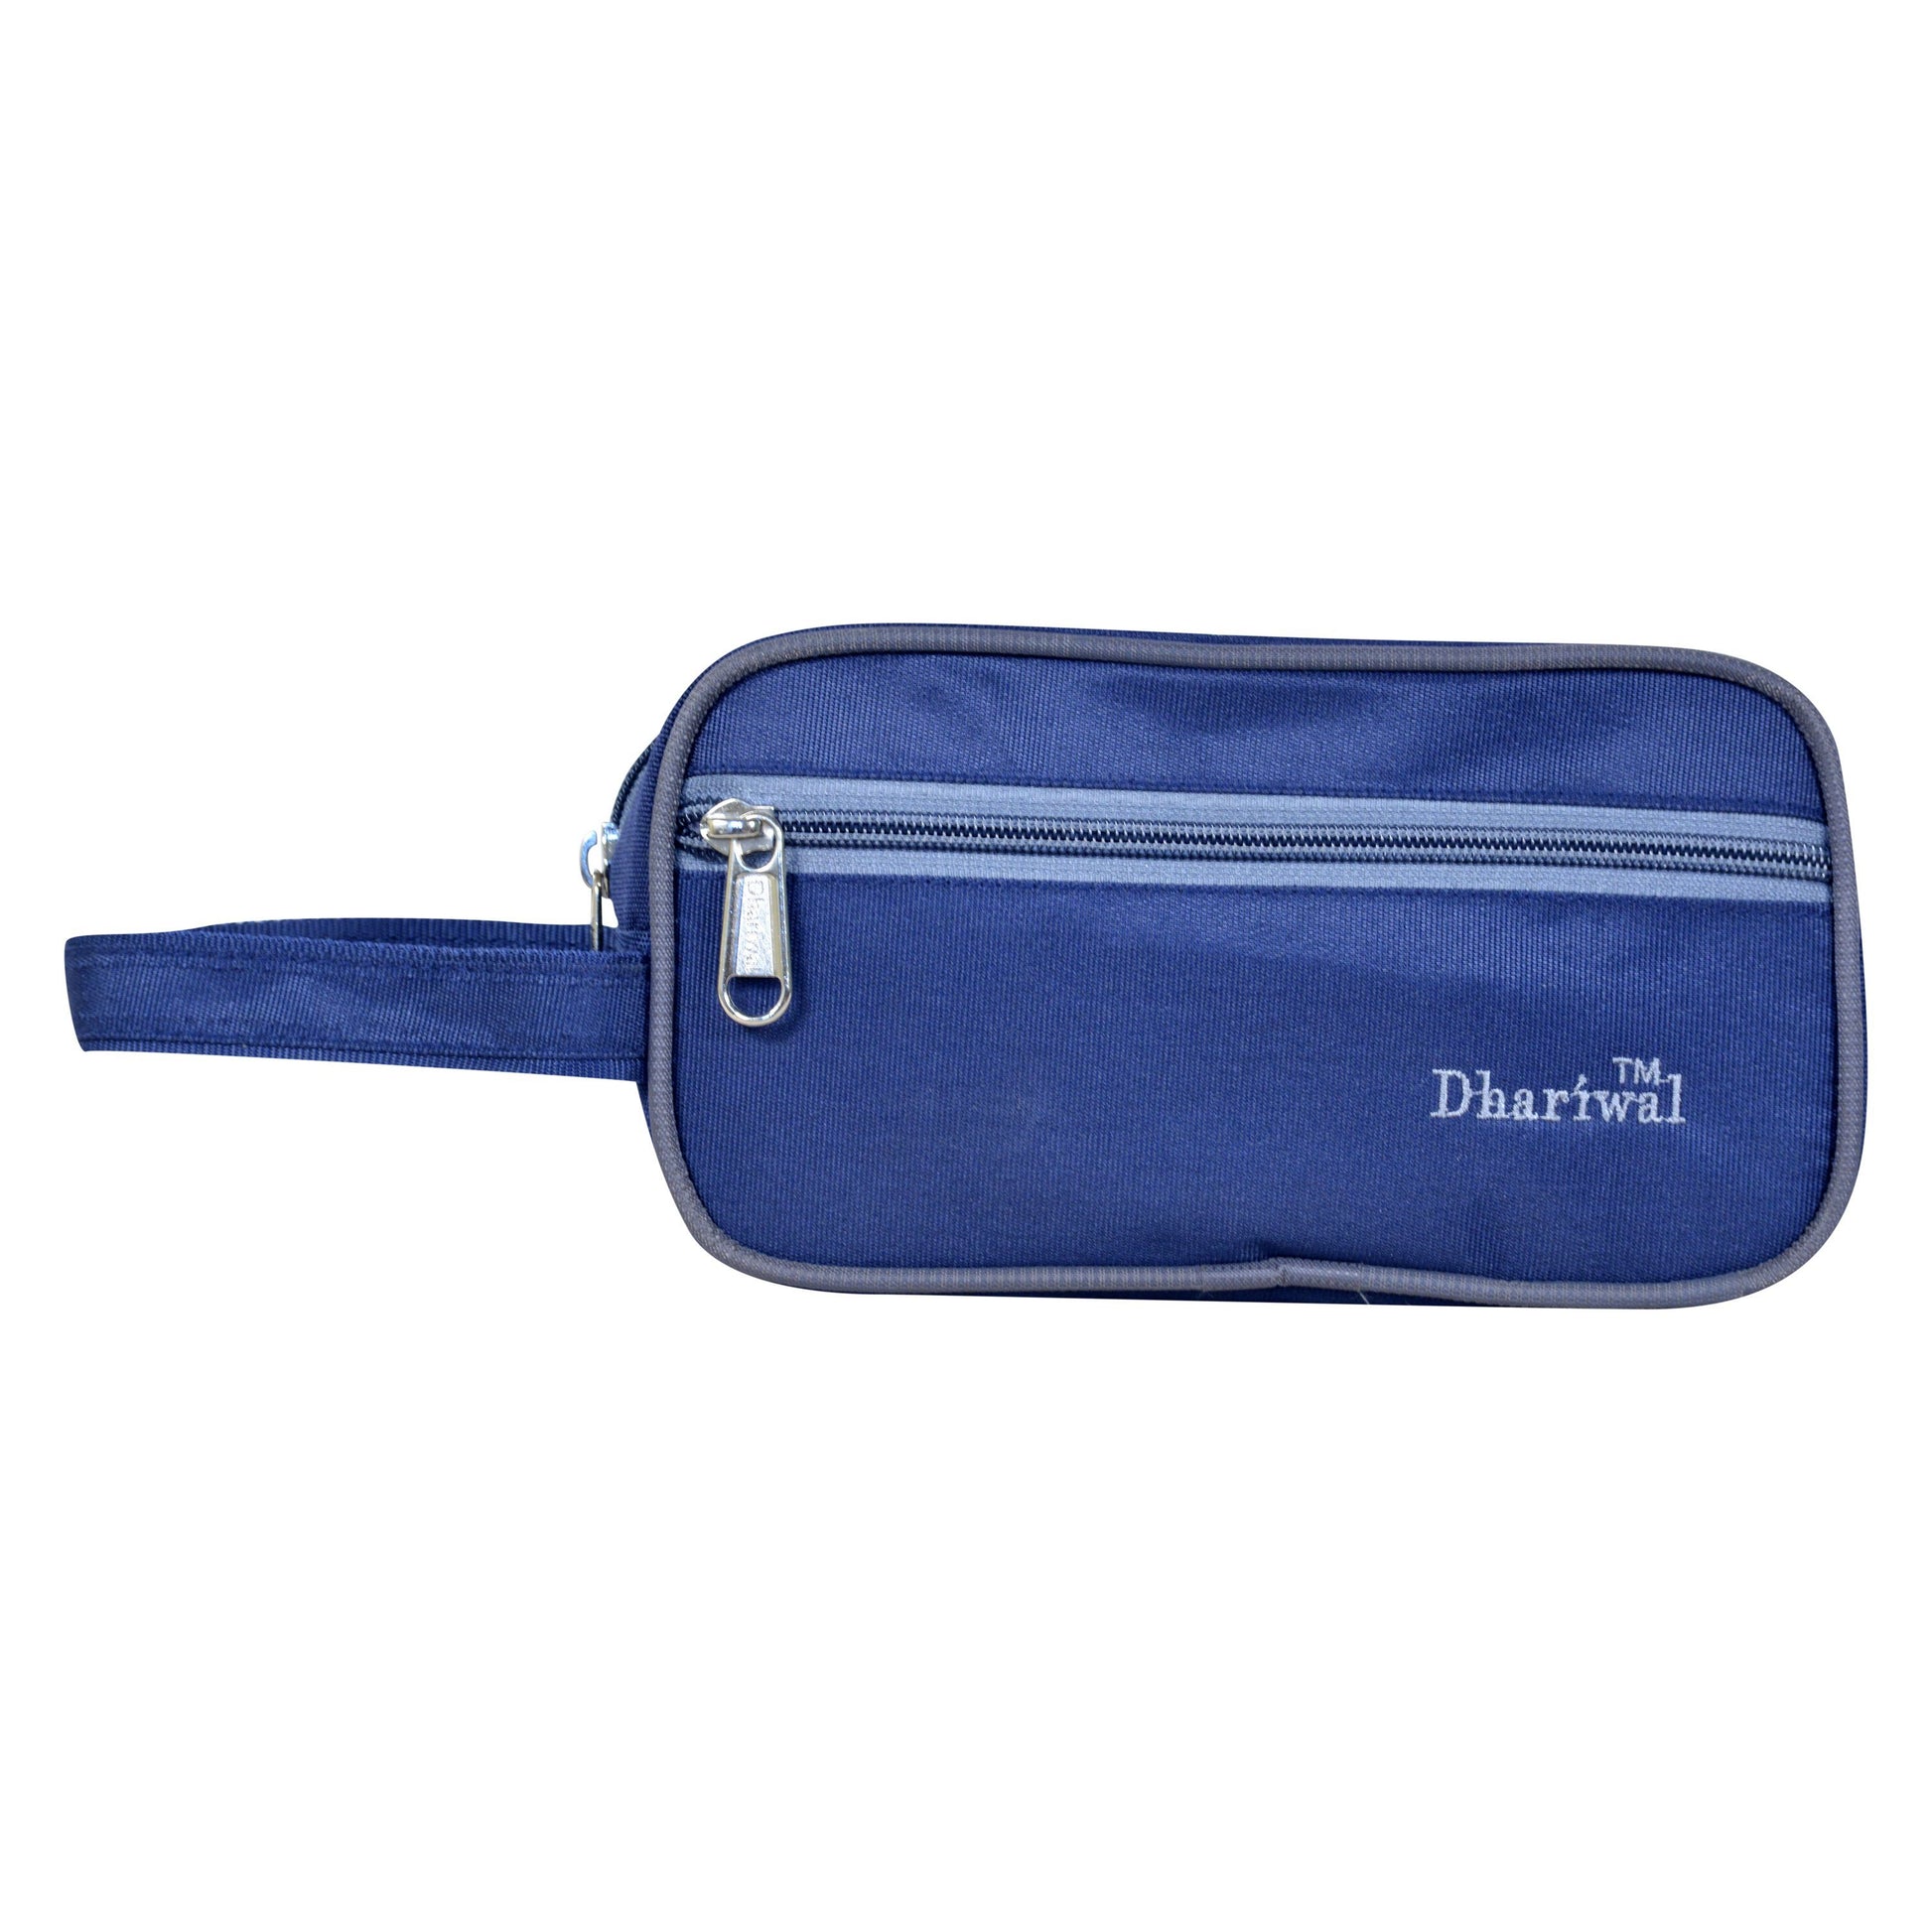 Dhariwal Shaving kit | toiletry bag for Cosmetics,Gadgets, Fashion Accessories, Keys SHK-1003 Shaving Kit Dhariwal Blue 